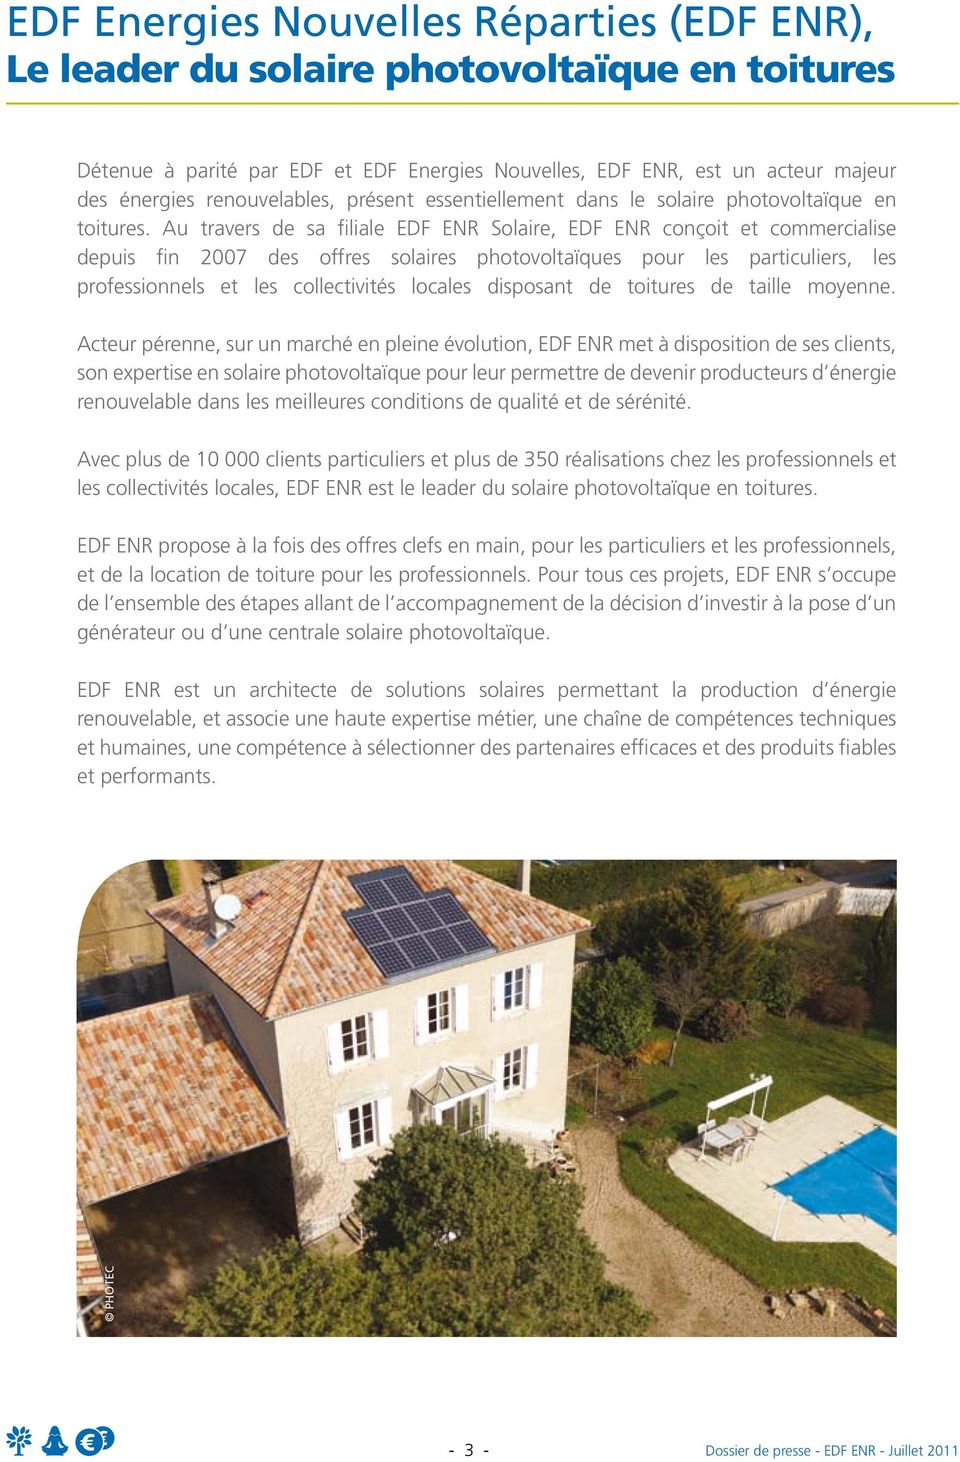 Au travers de sa filiale EDF ENR Solaire, EDF ENR conçoit et commercialise depuis fin 2007 des offres solaires photovoltaïques pour les particuliers, les professionnels et les collectivités locales